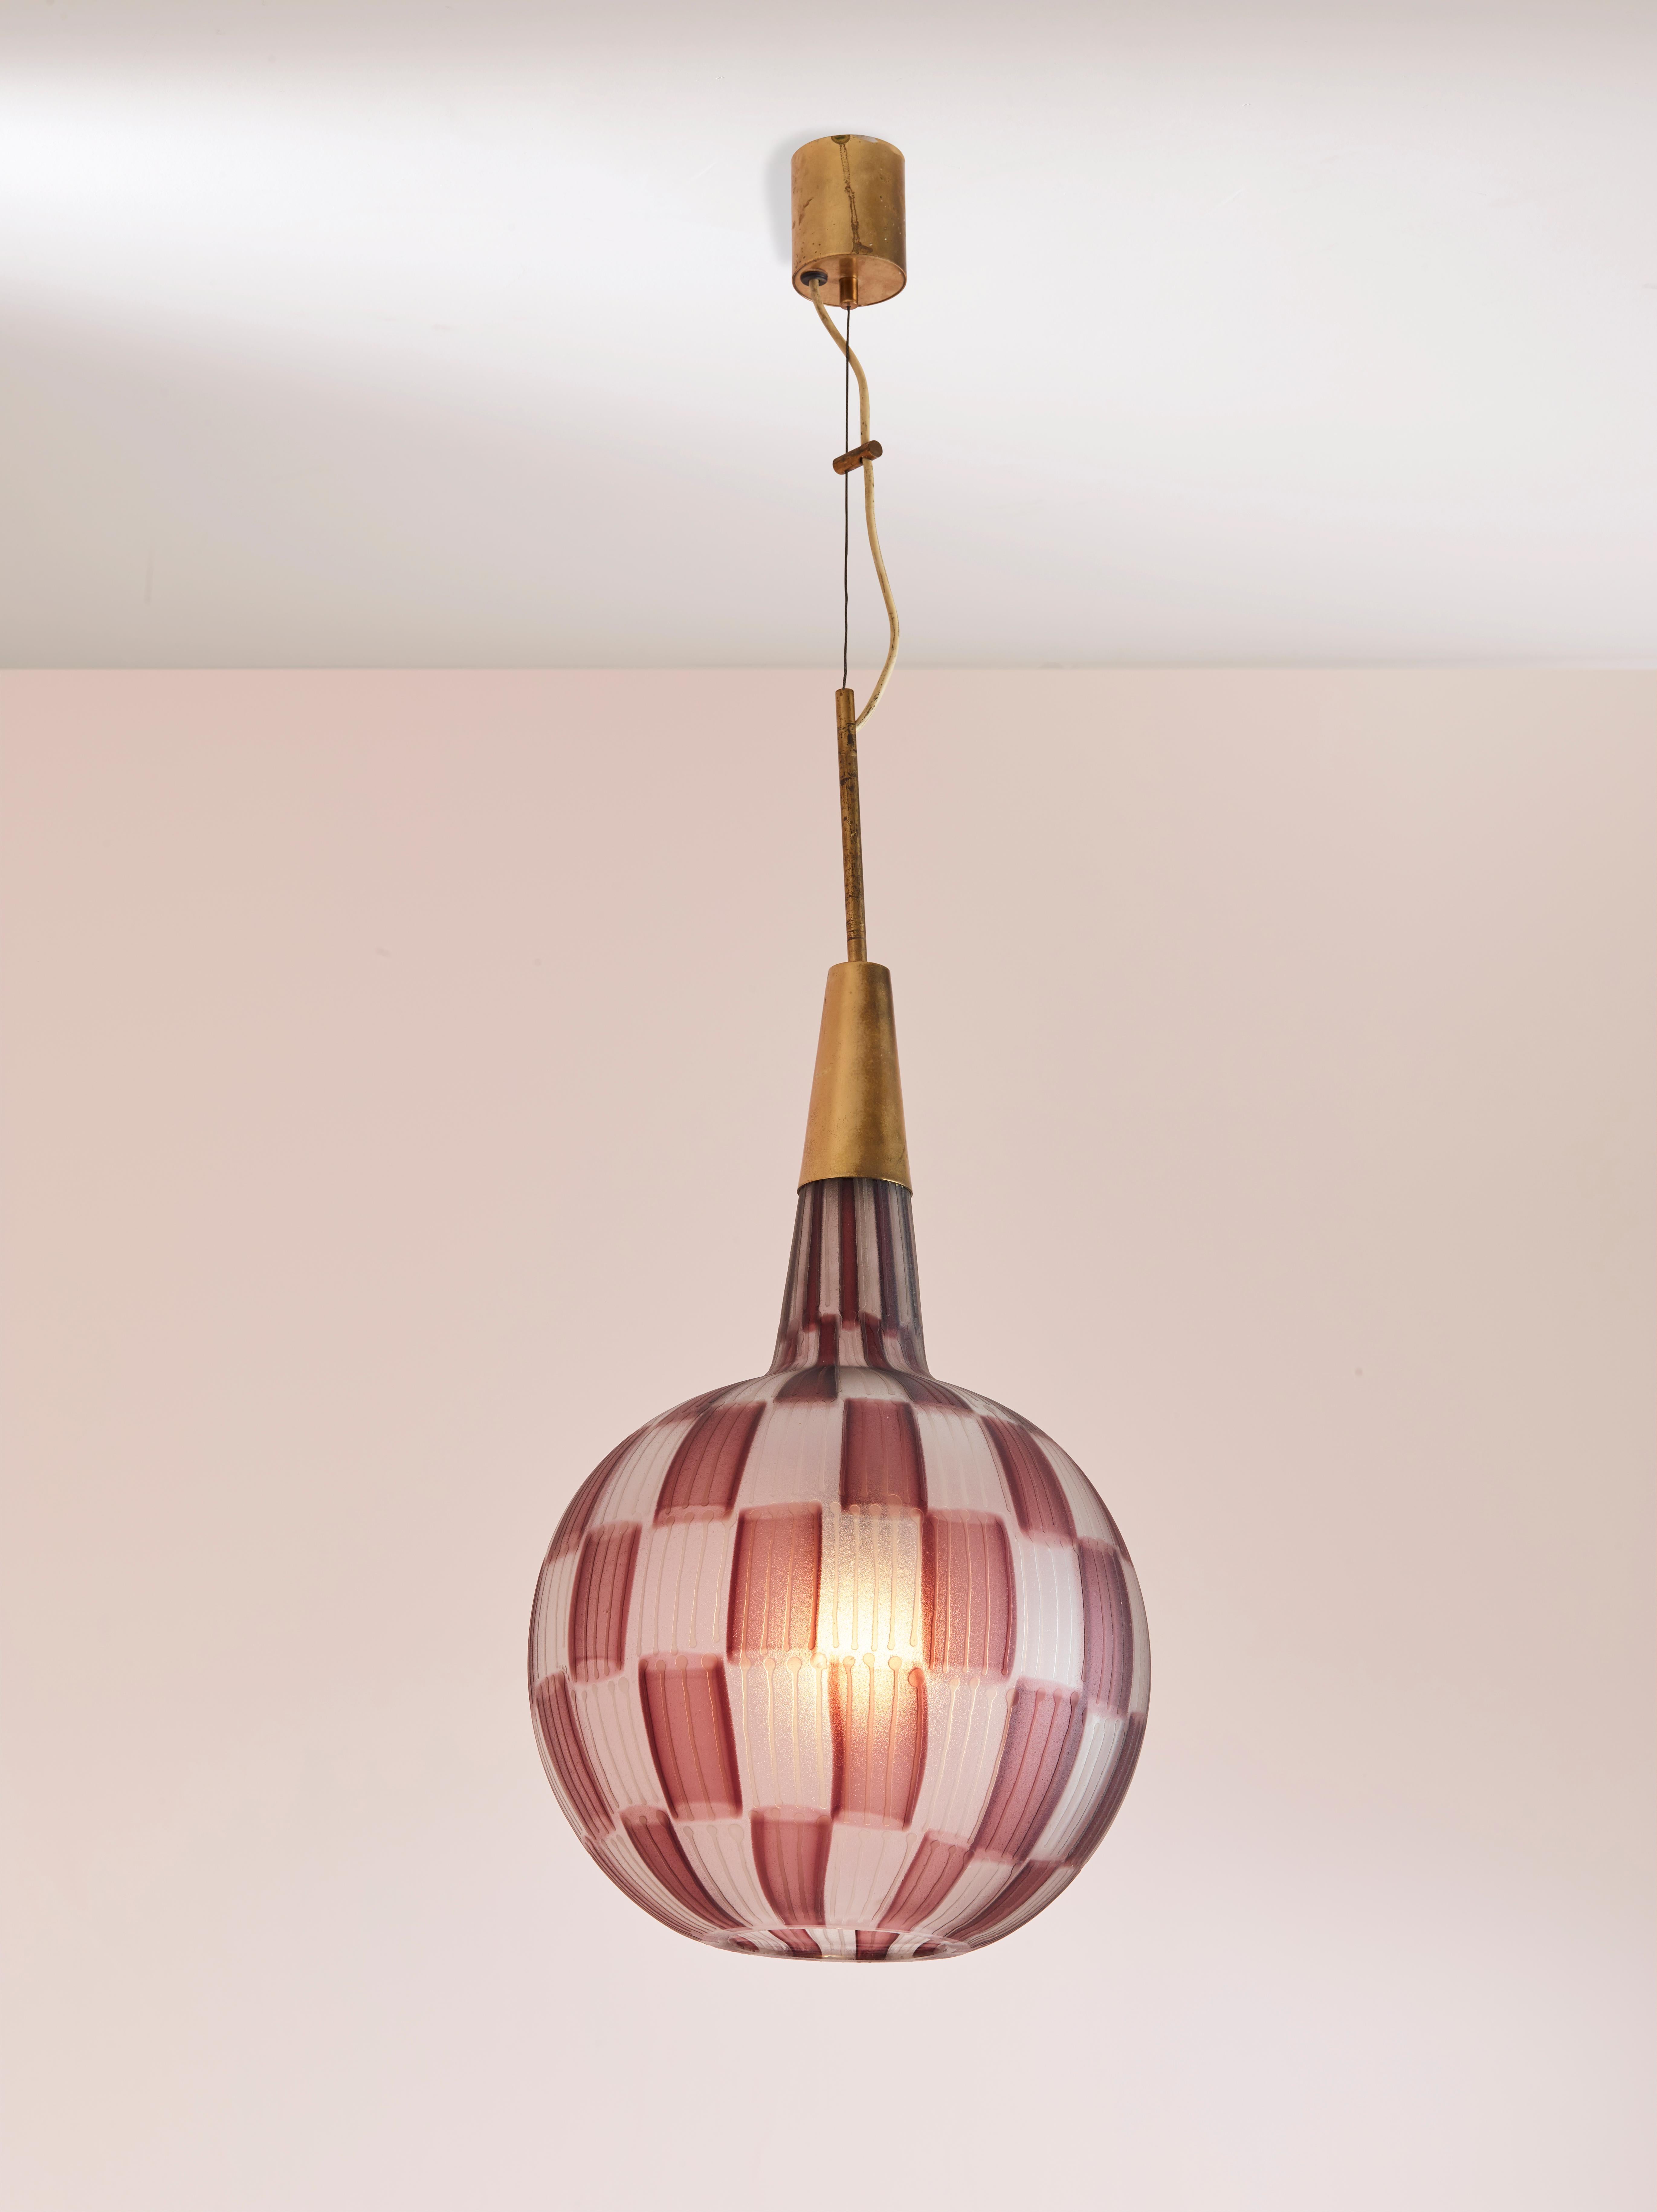 Rare lampe suspendue conçue par Design-Light et fabriquée par Stilnovo au début des années 1960.

Ce luminaire particulier de Stilnovo a une structure en laiton très élégante avec un diffuseur en verre gravé soufflé à la main par le verrier